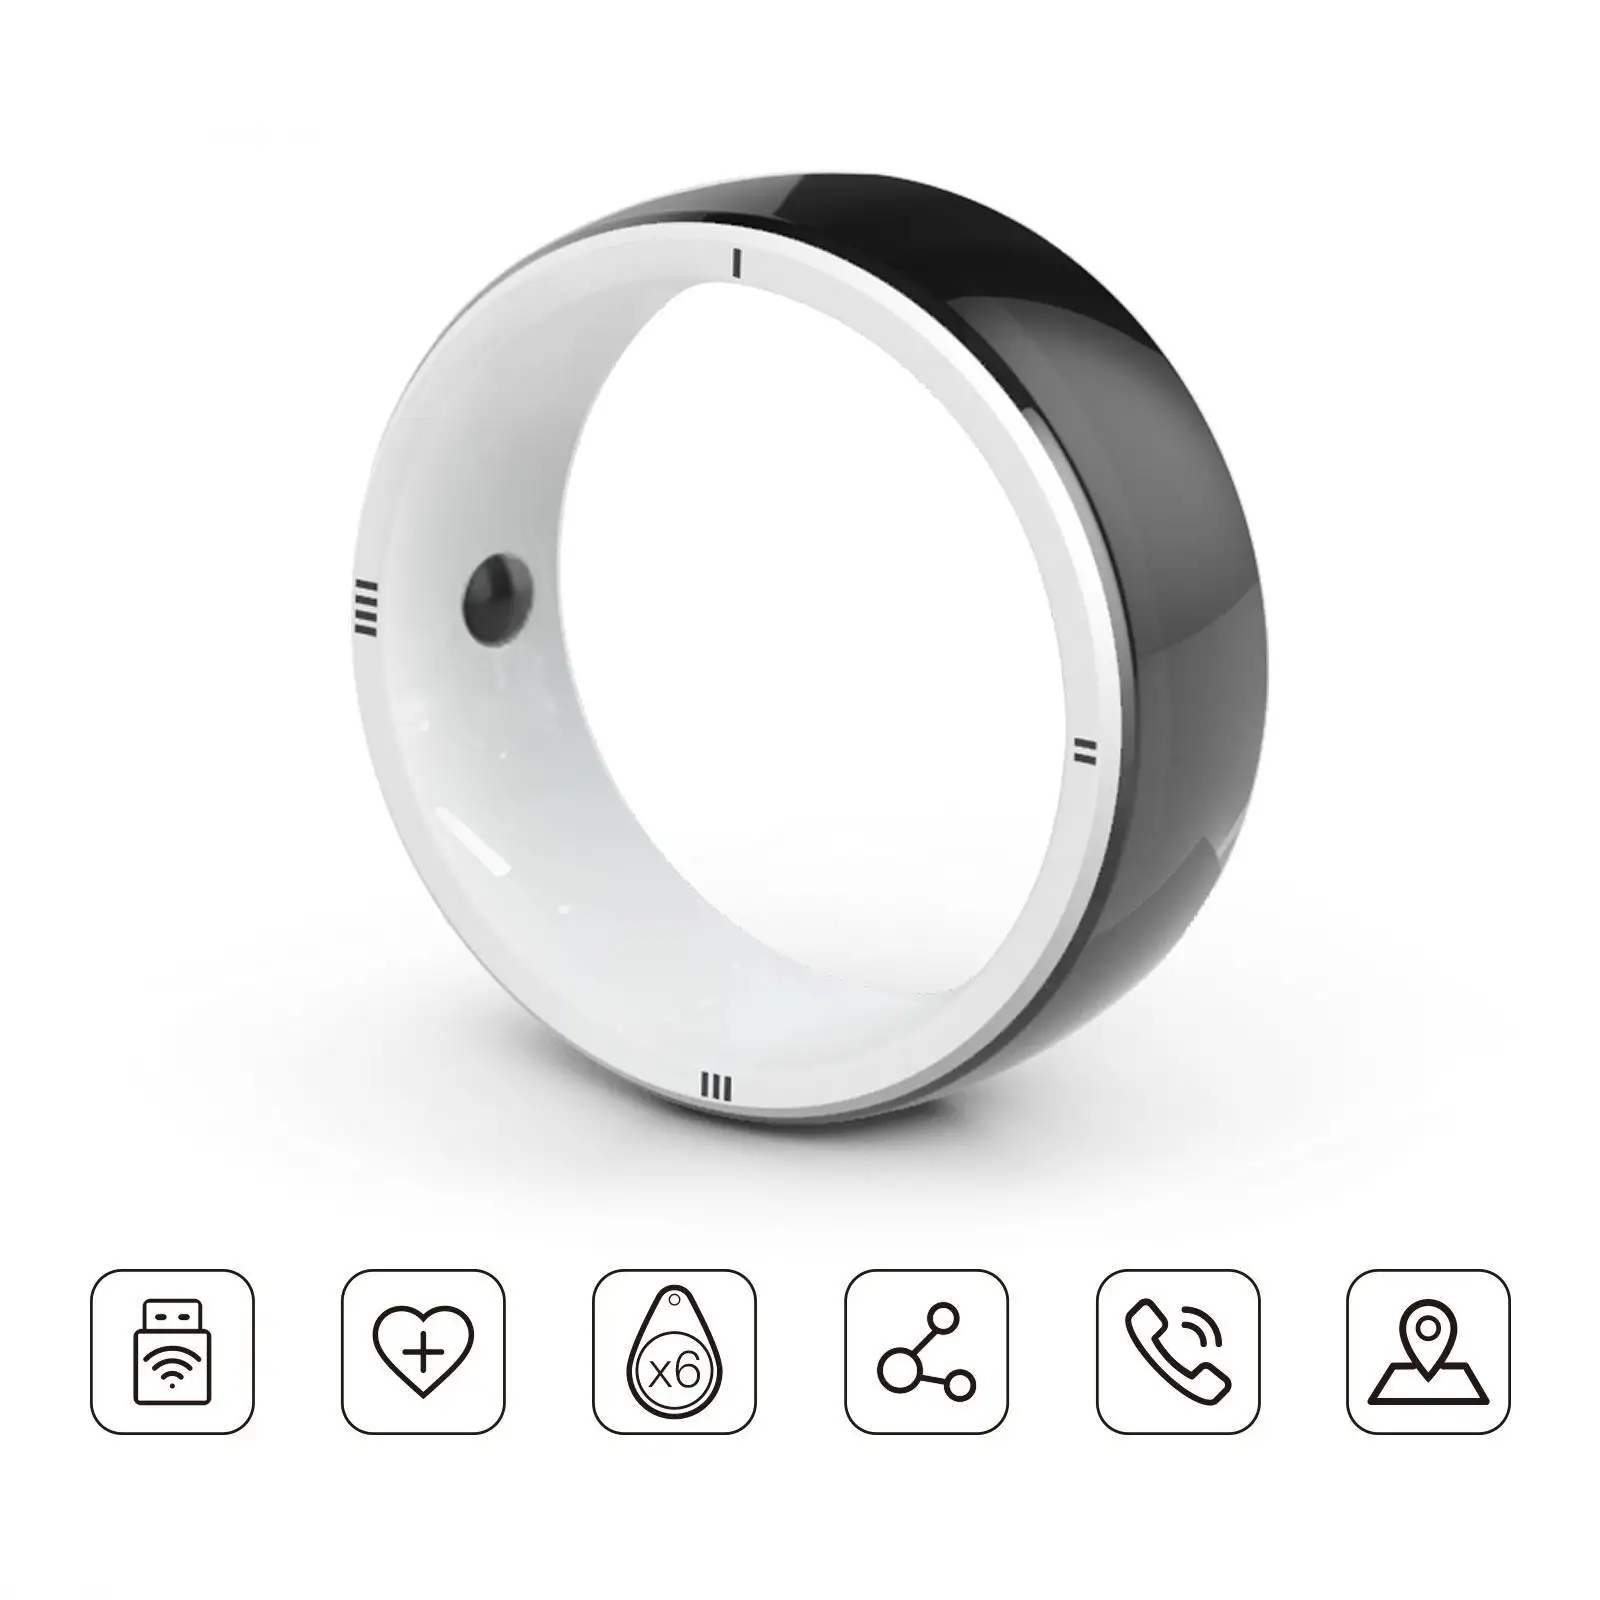 Смарт-кольцо JAKCOM R5, новое смарт-кольцо, супер-ценное, чем крепление на тире, держатель для сотовой связи, прошивка, серверный кейс, Флорида, gators, ремешок